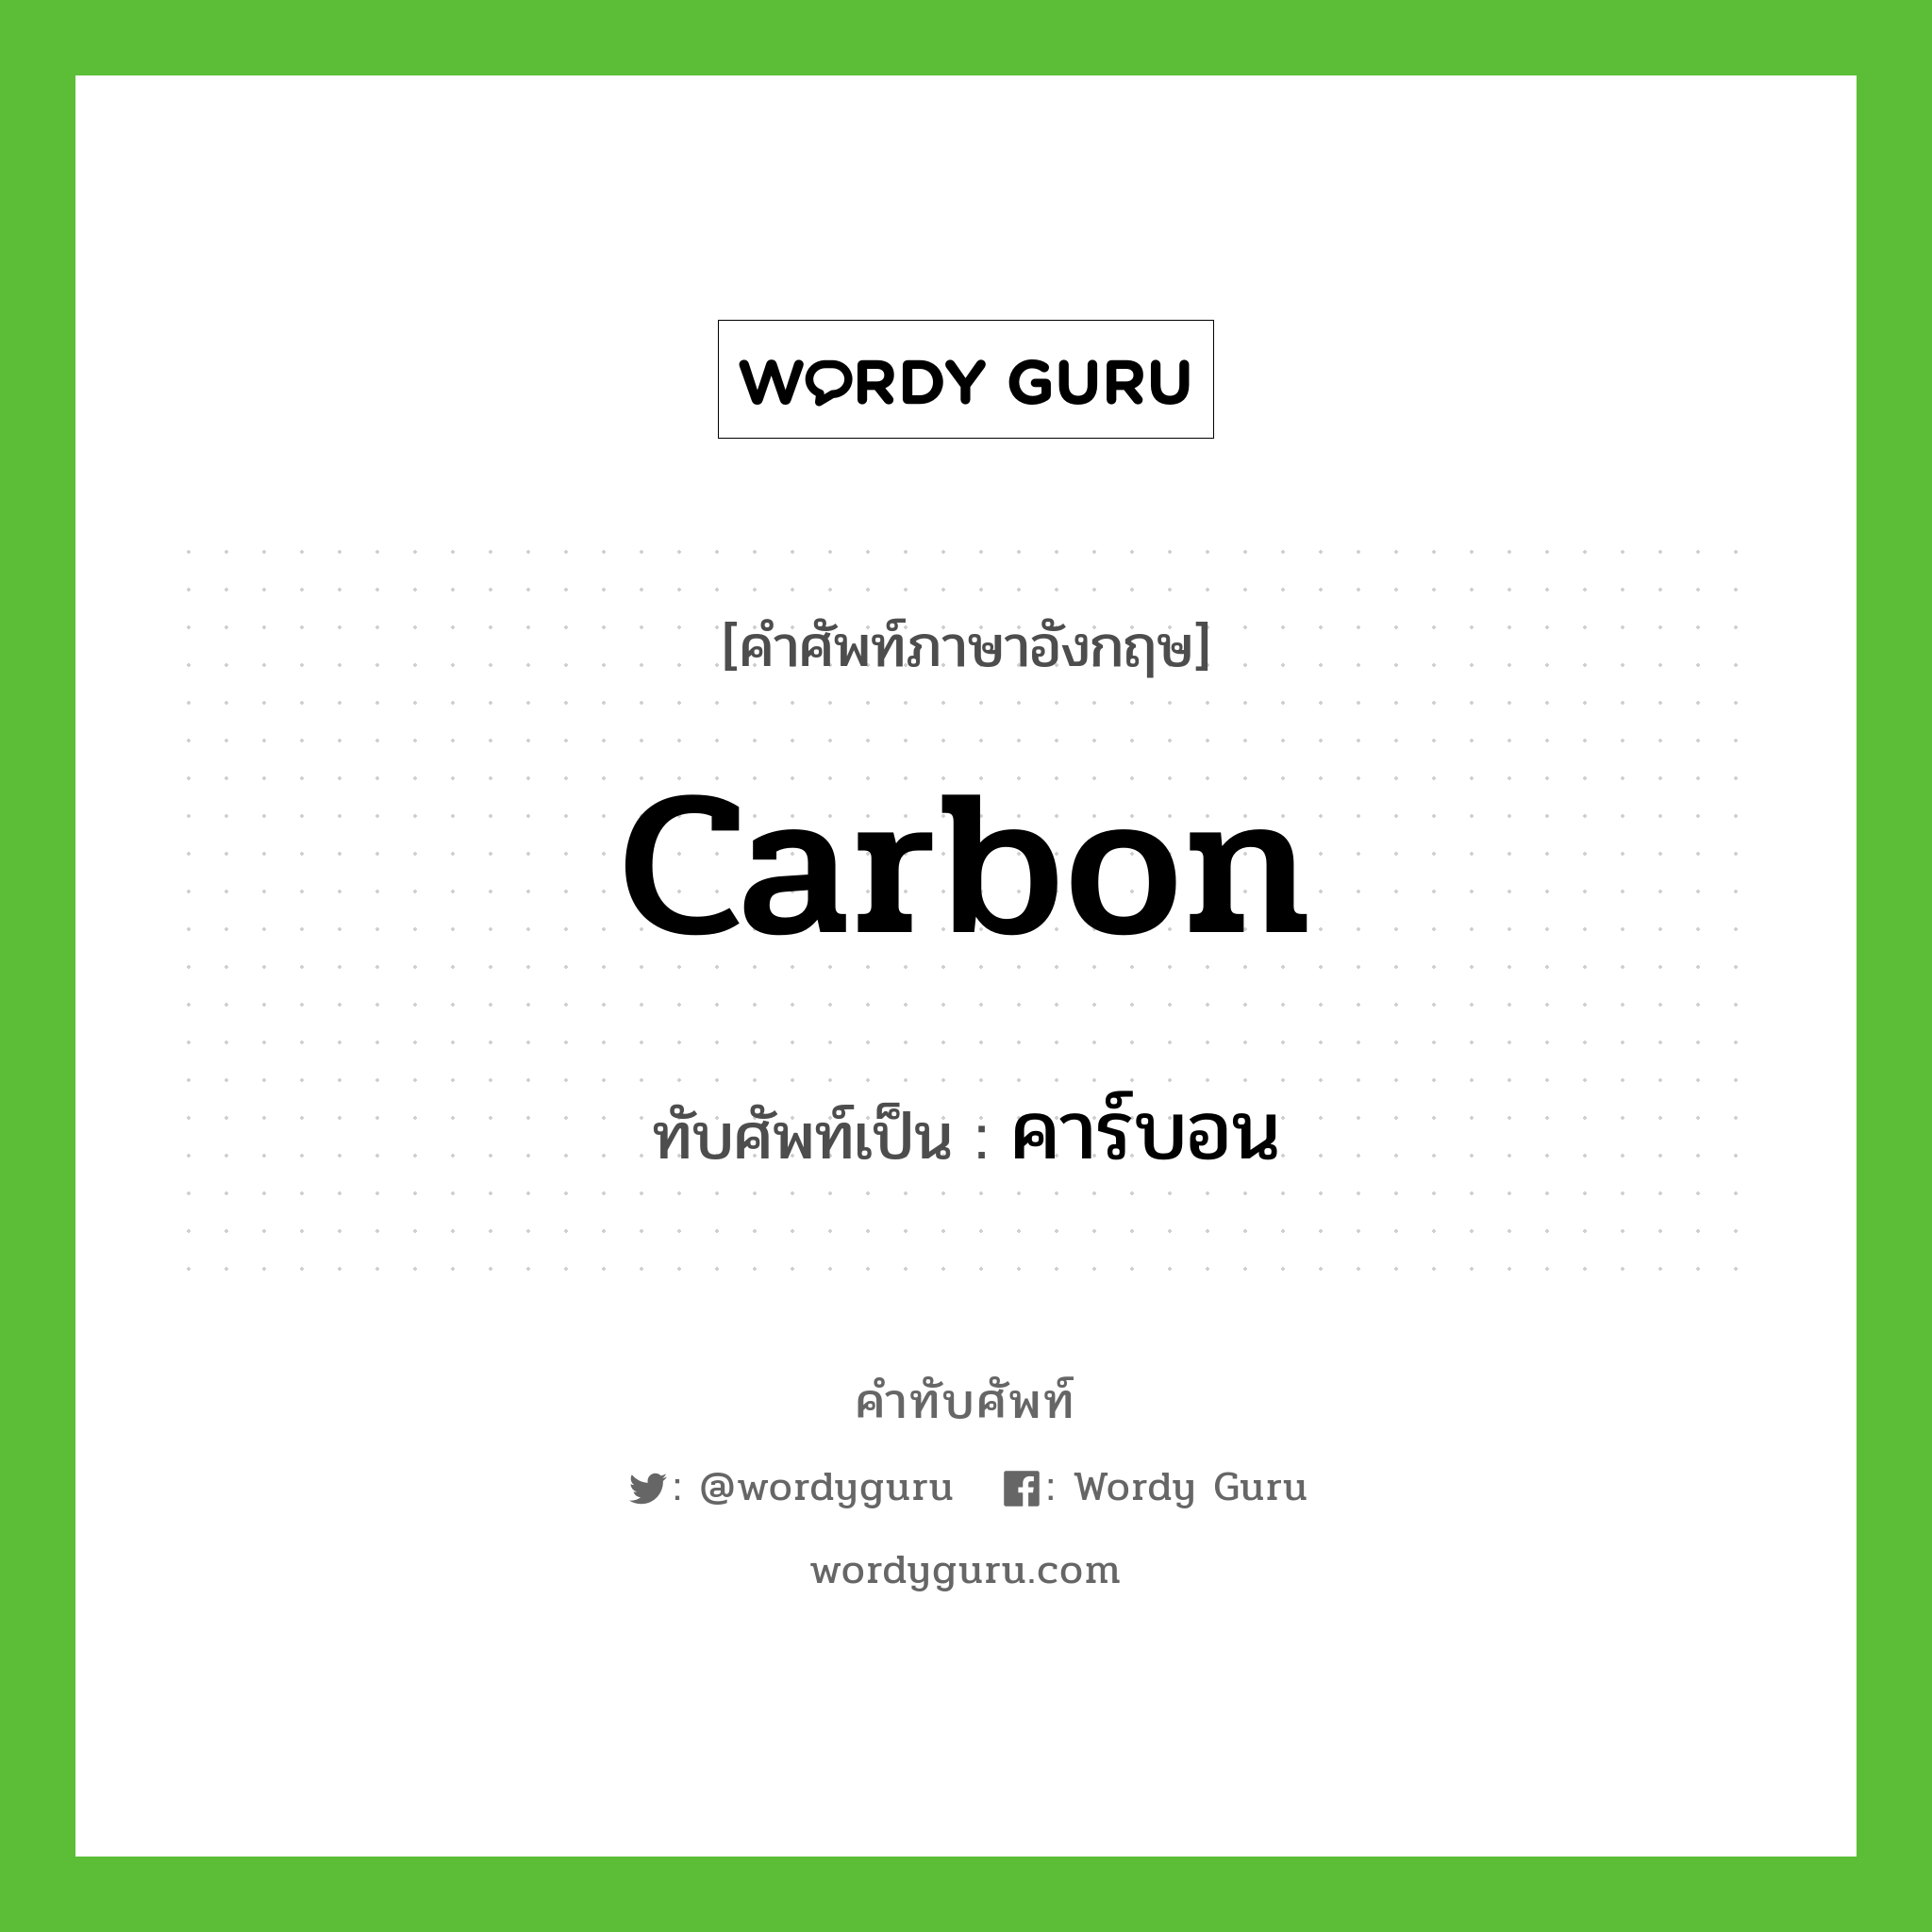 carbon เขียนเป็นคำไทยว่าอะไร?, คำศัพท์ภาษาอังกฤษ carbon ทับศัพท์เป็น คาร์บอน